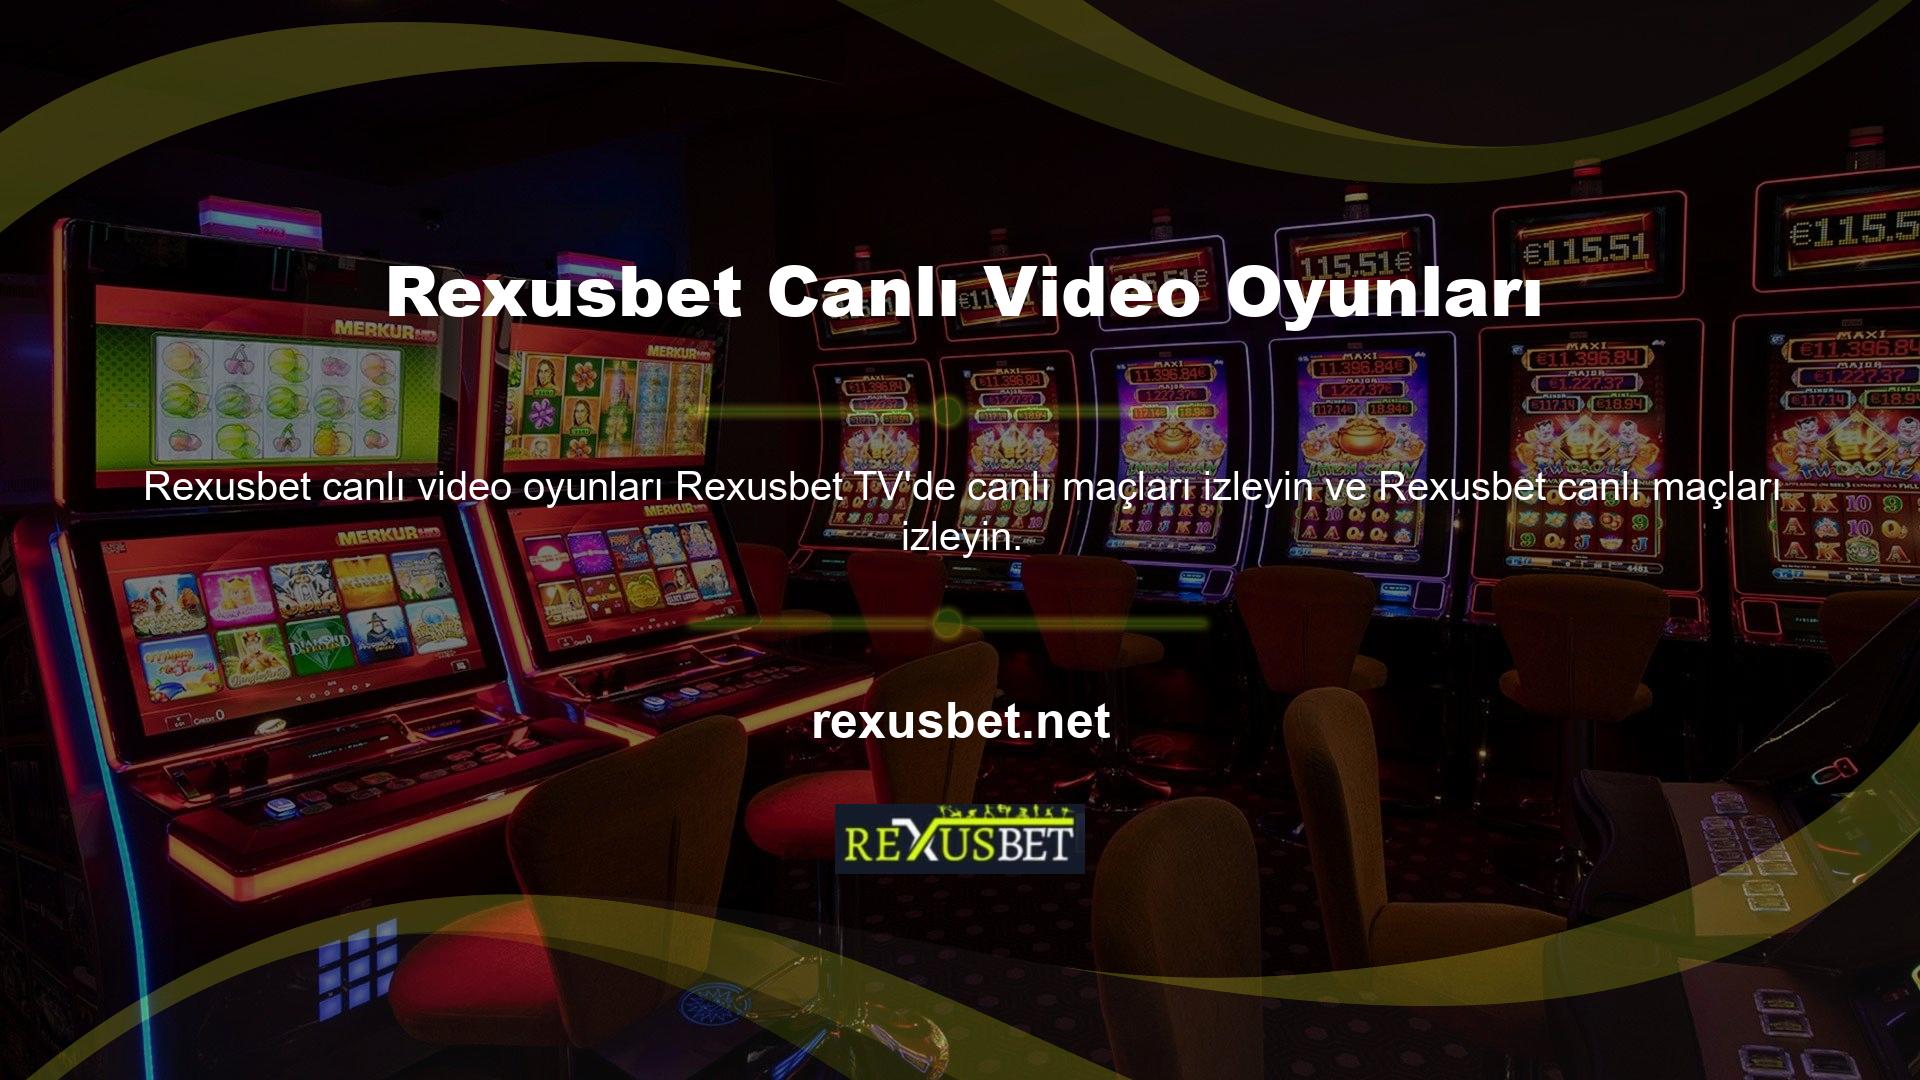 Ayrıca Rexusbet TV'nin oyun dağıtım özelliği, siteye giriş yapan tüm izleyicilerin spor maçlarını izlemesine olanak tanır